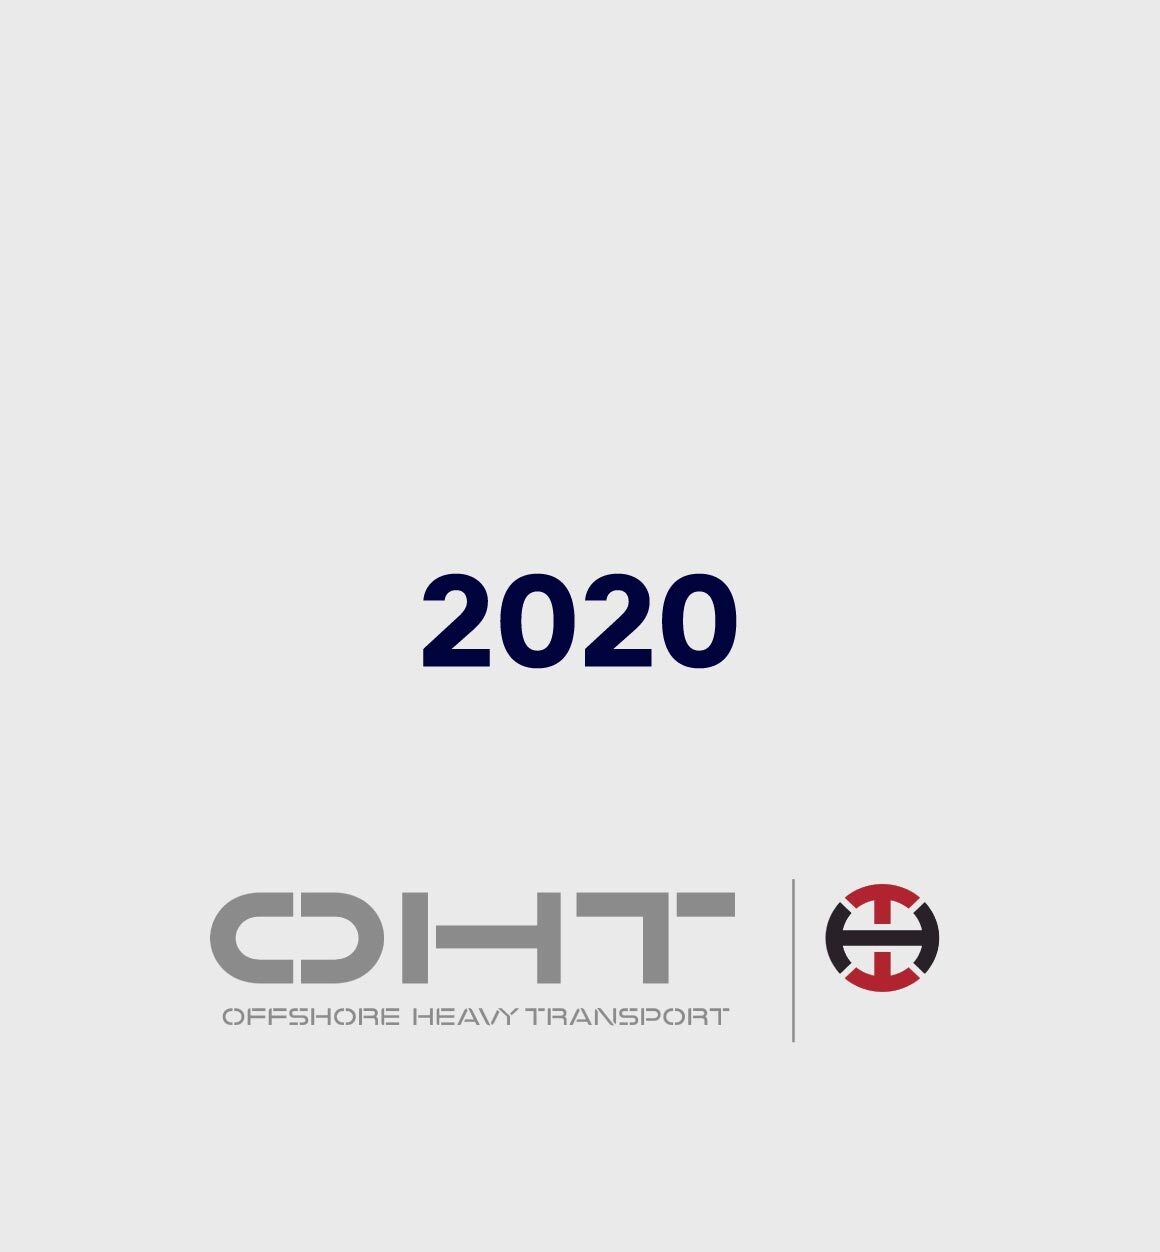 Offshore Heavy Transport 2020 OHT